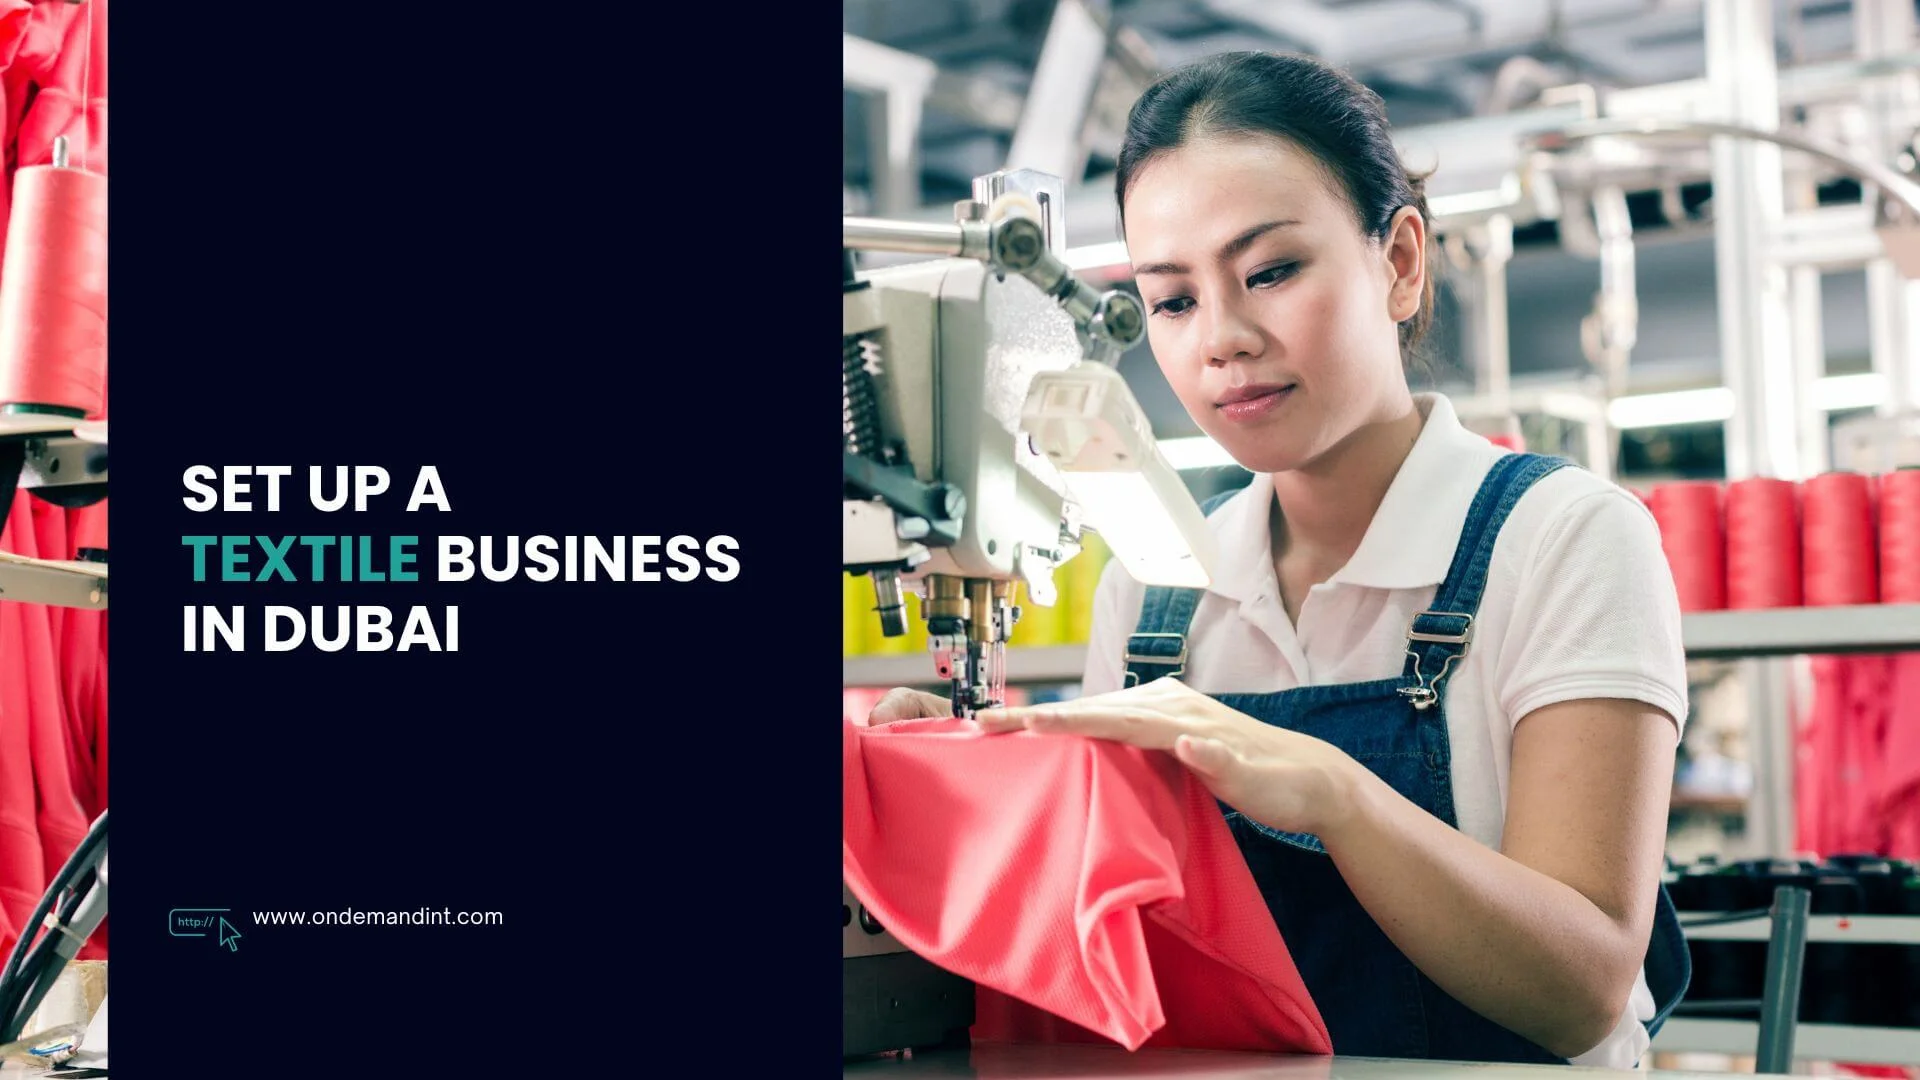 Start a Textile Business in Dubai: Advantages & Requirements